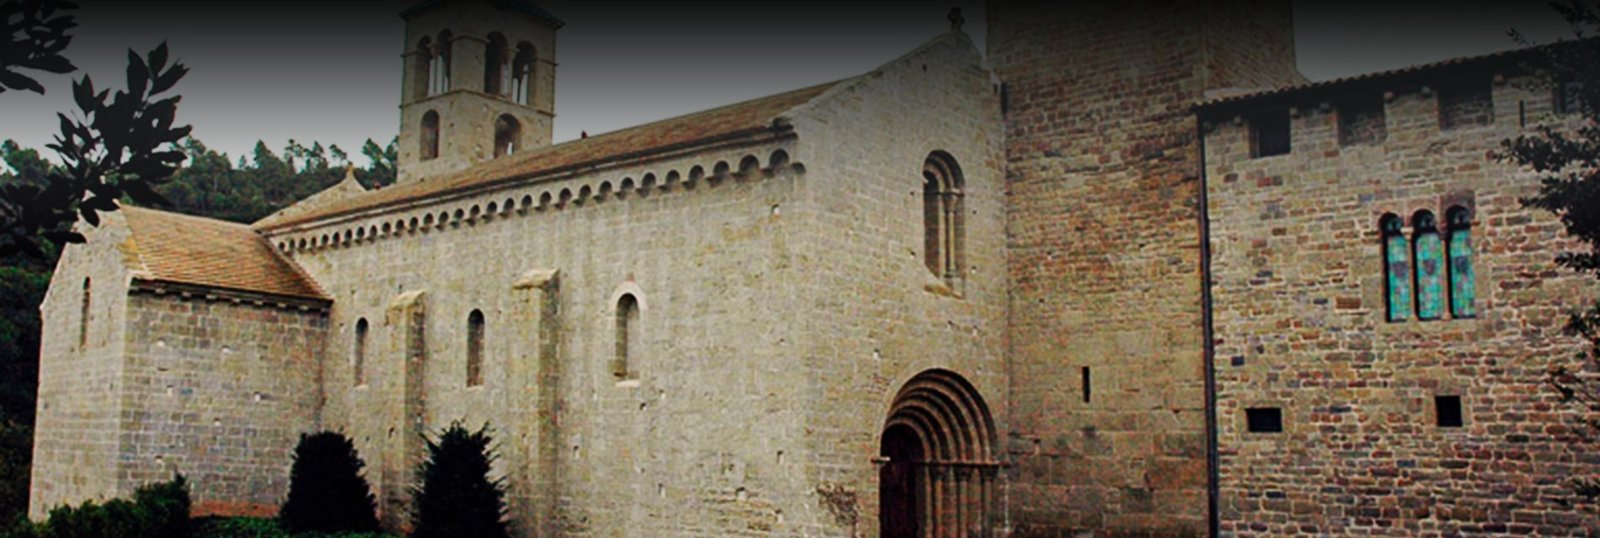 Monasterio de Sant Benet header - Origenes de Europa